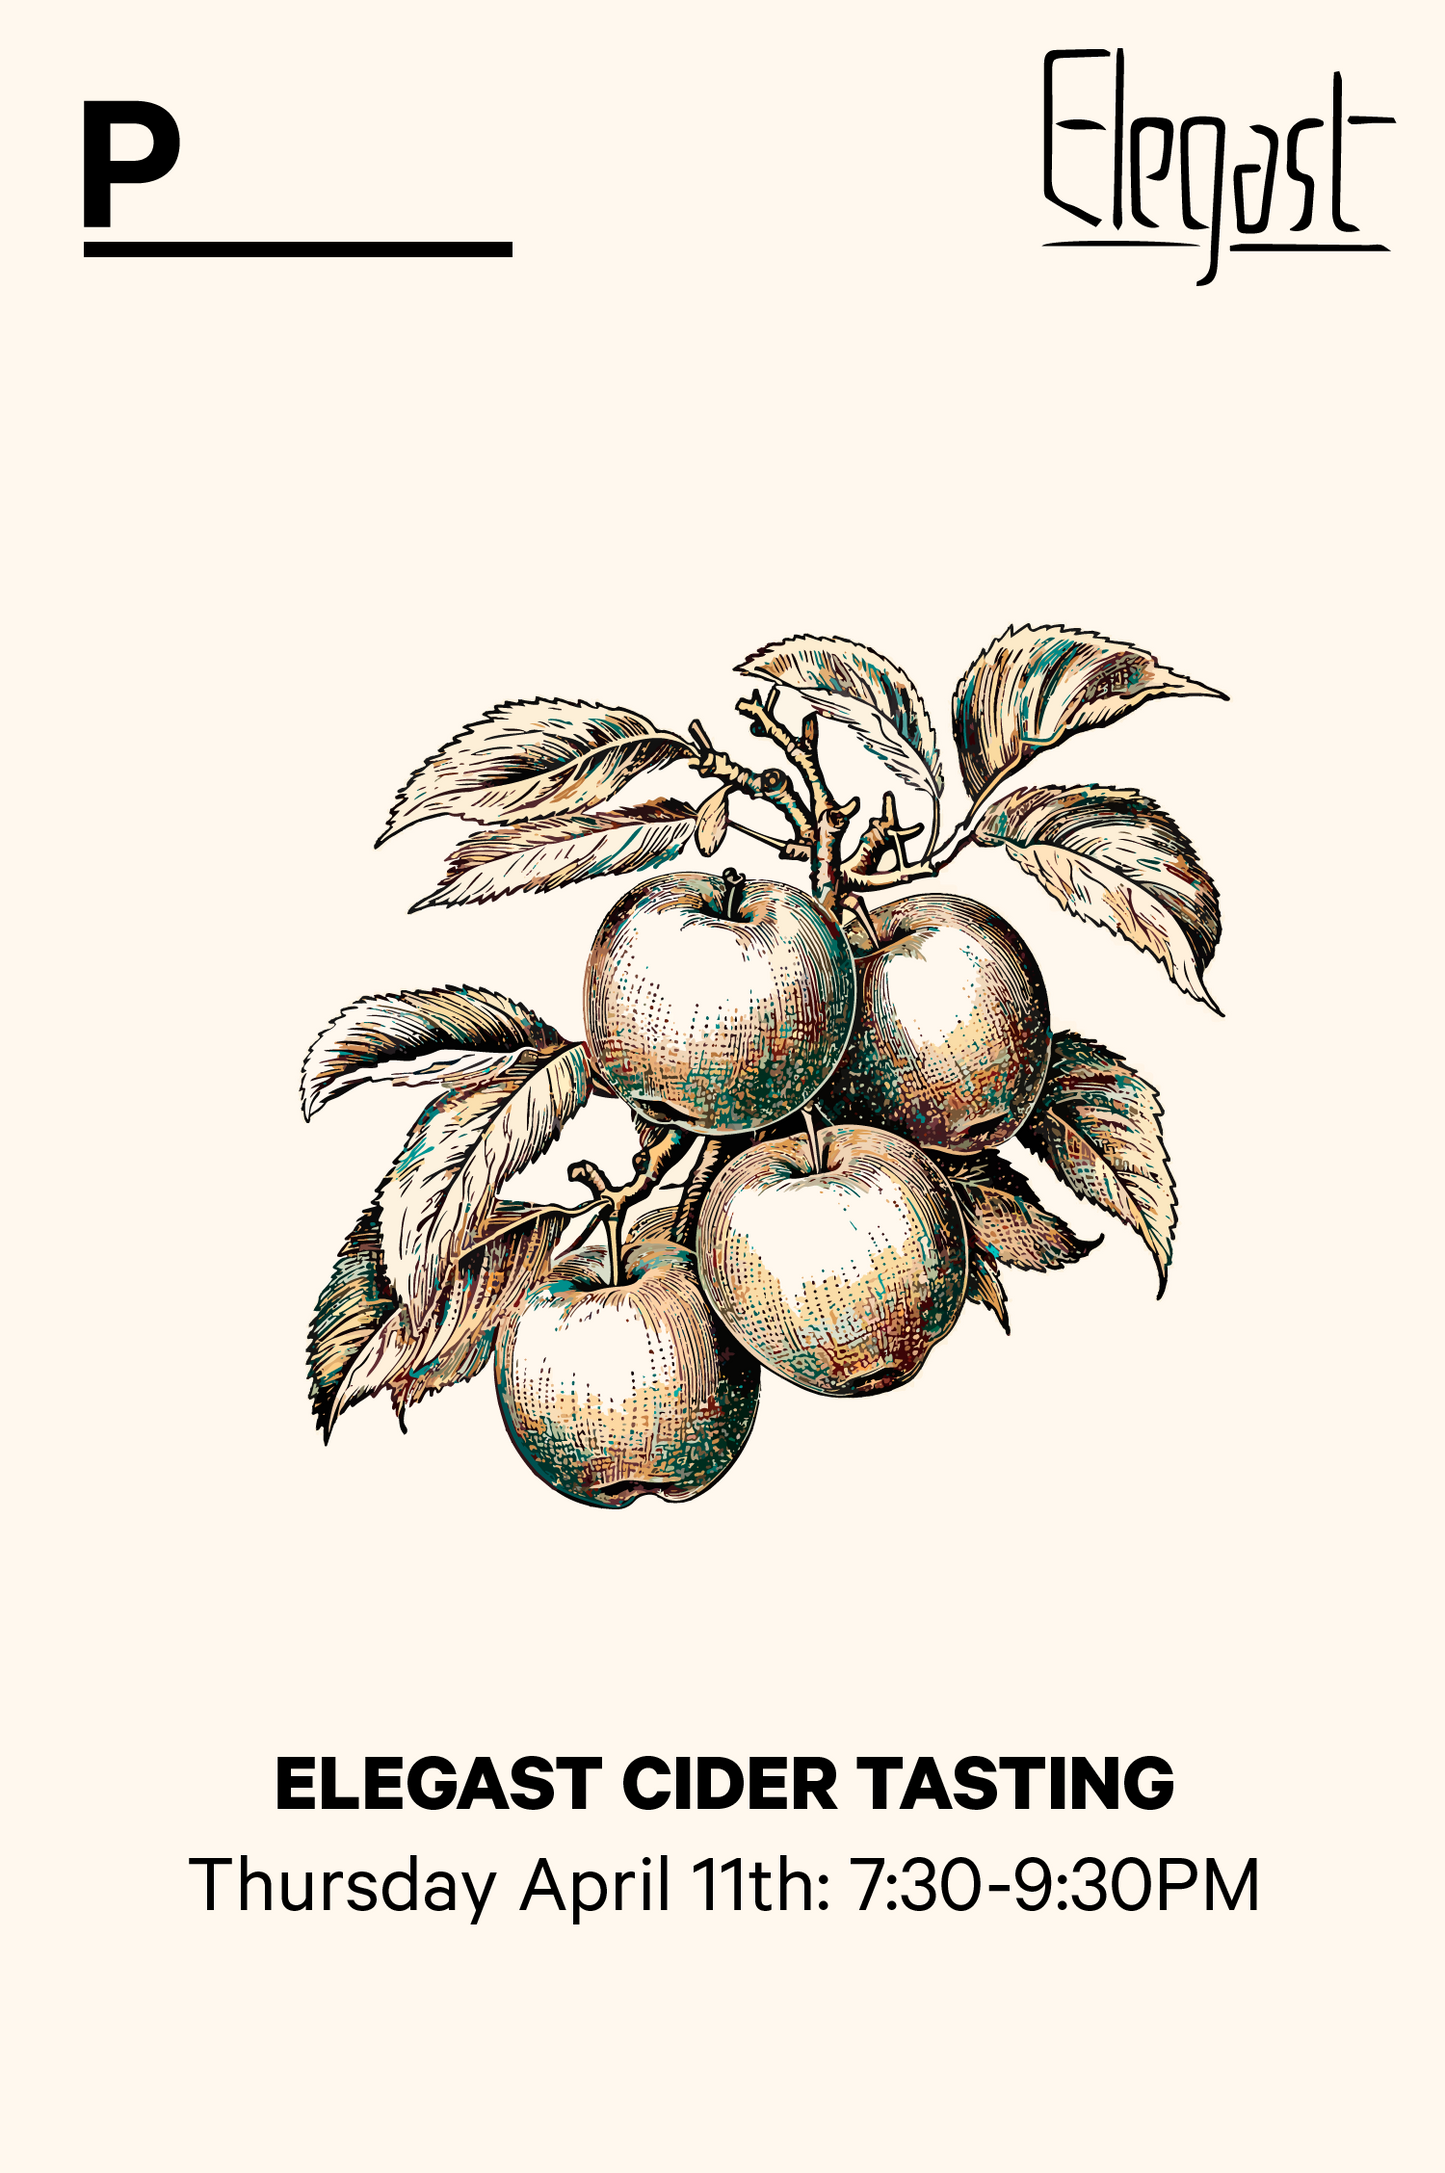 11-4 | Cider tasting with Elegast Cider